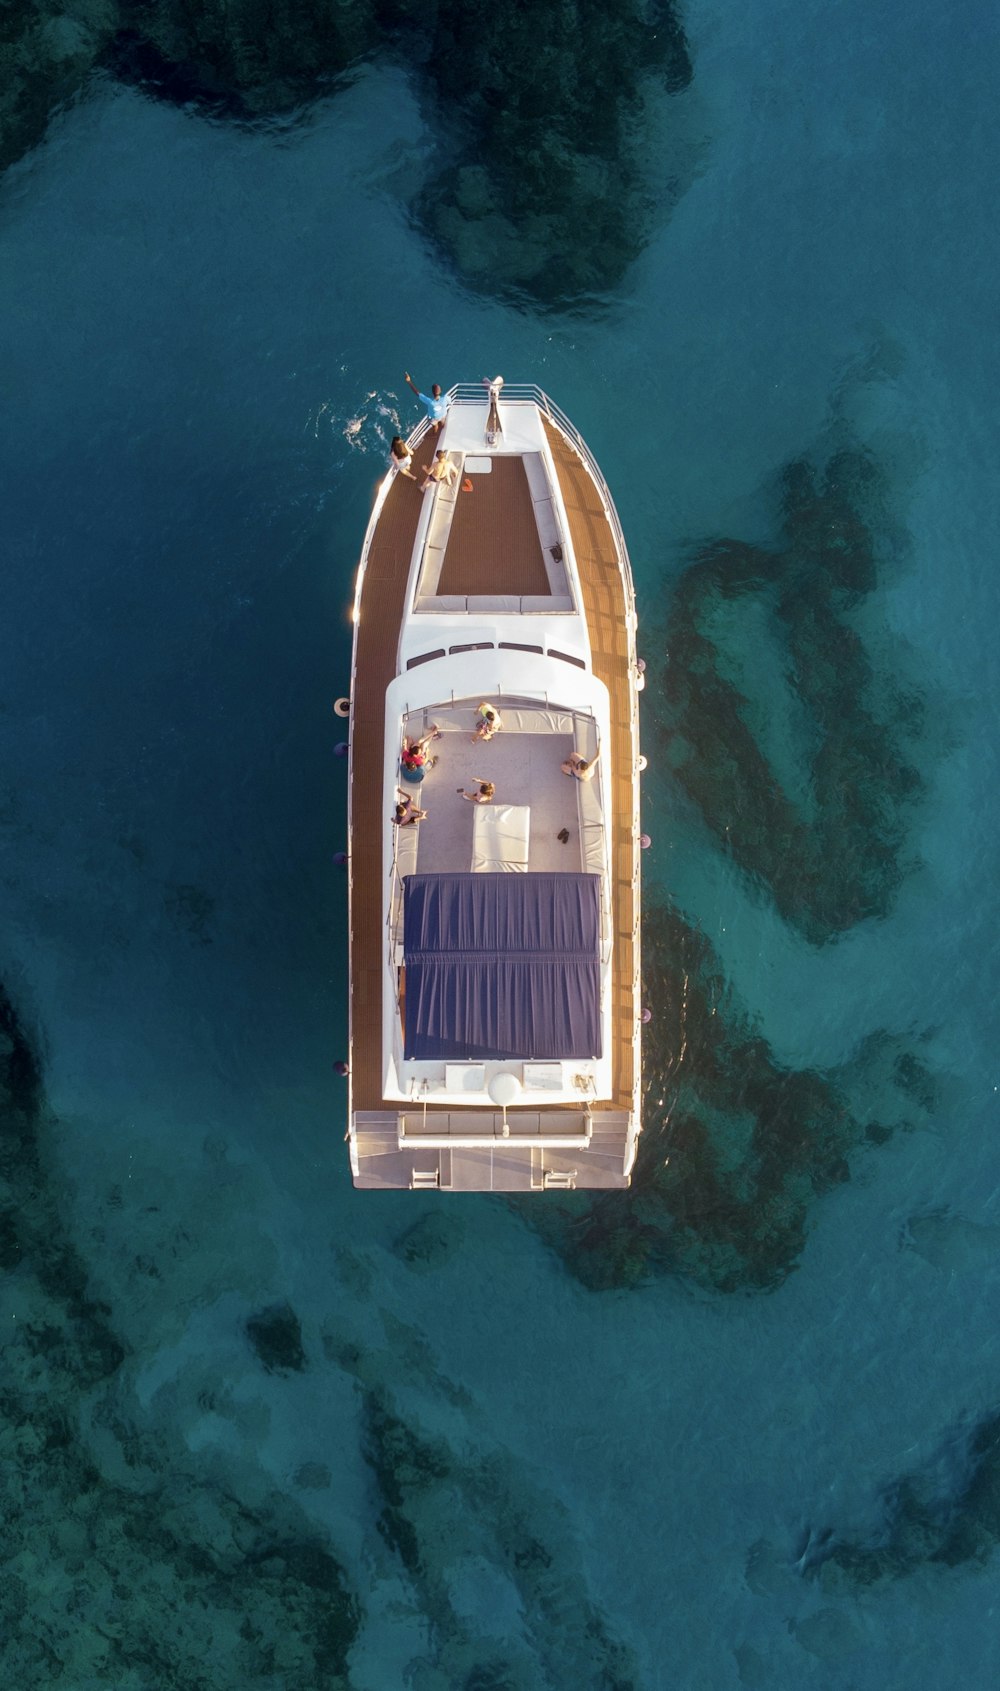 Photographie aérienne d’un bateau blanc et brun sur l’eau